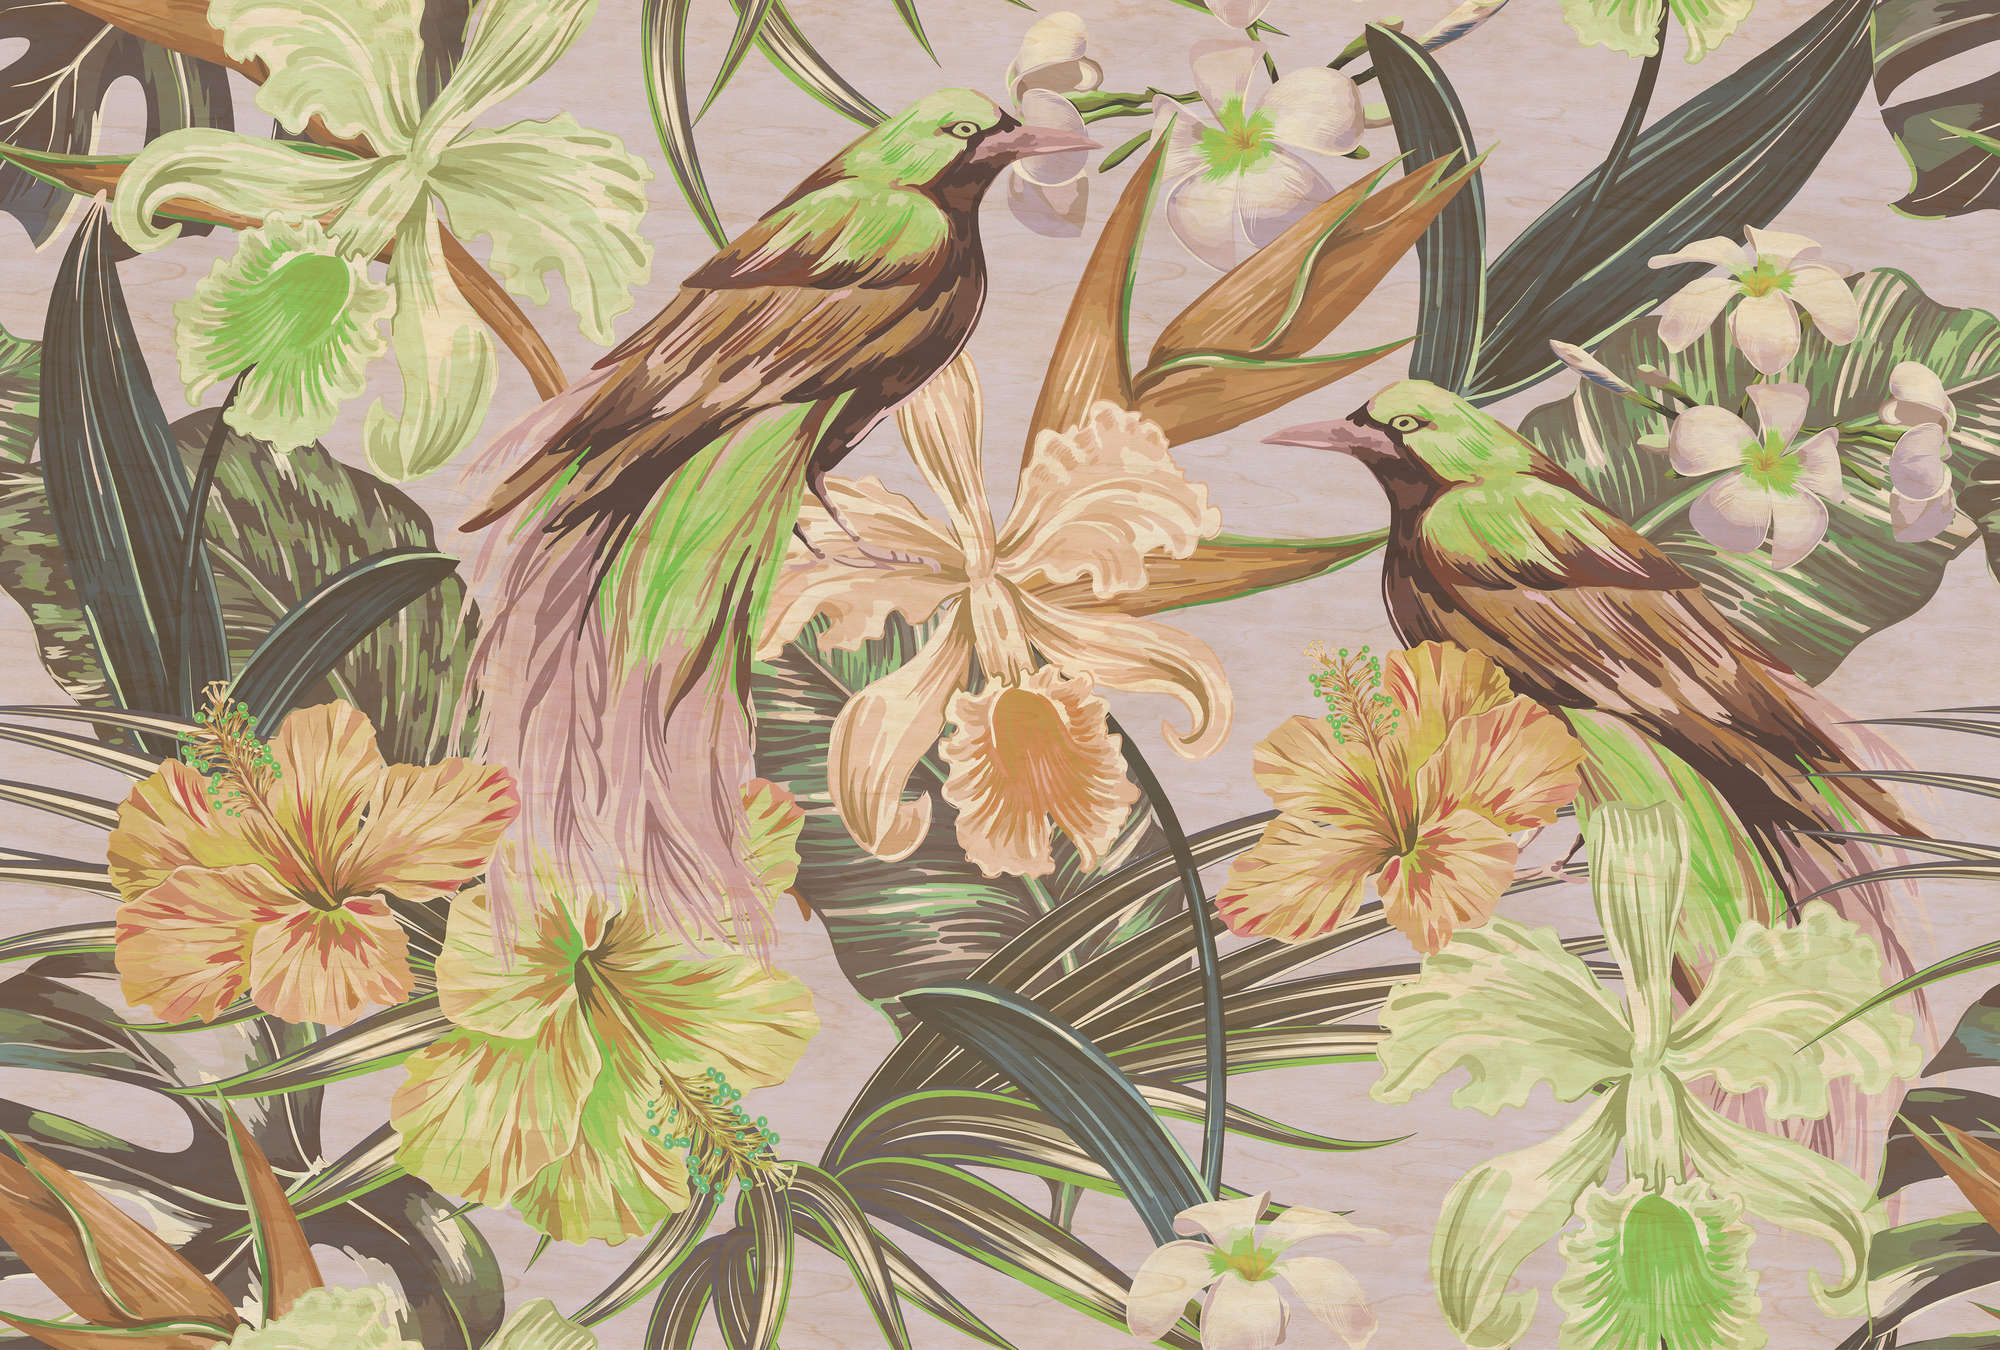             Exotische vogels 2 - Digital behang exotische vogels & planten - kras textuur - Beige, Groen | textuurvlies
        